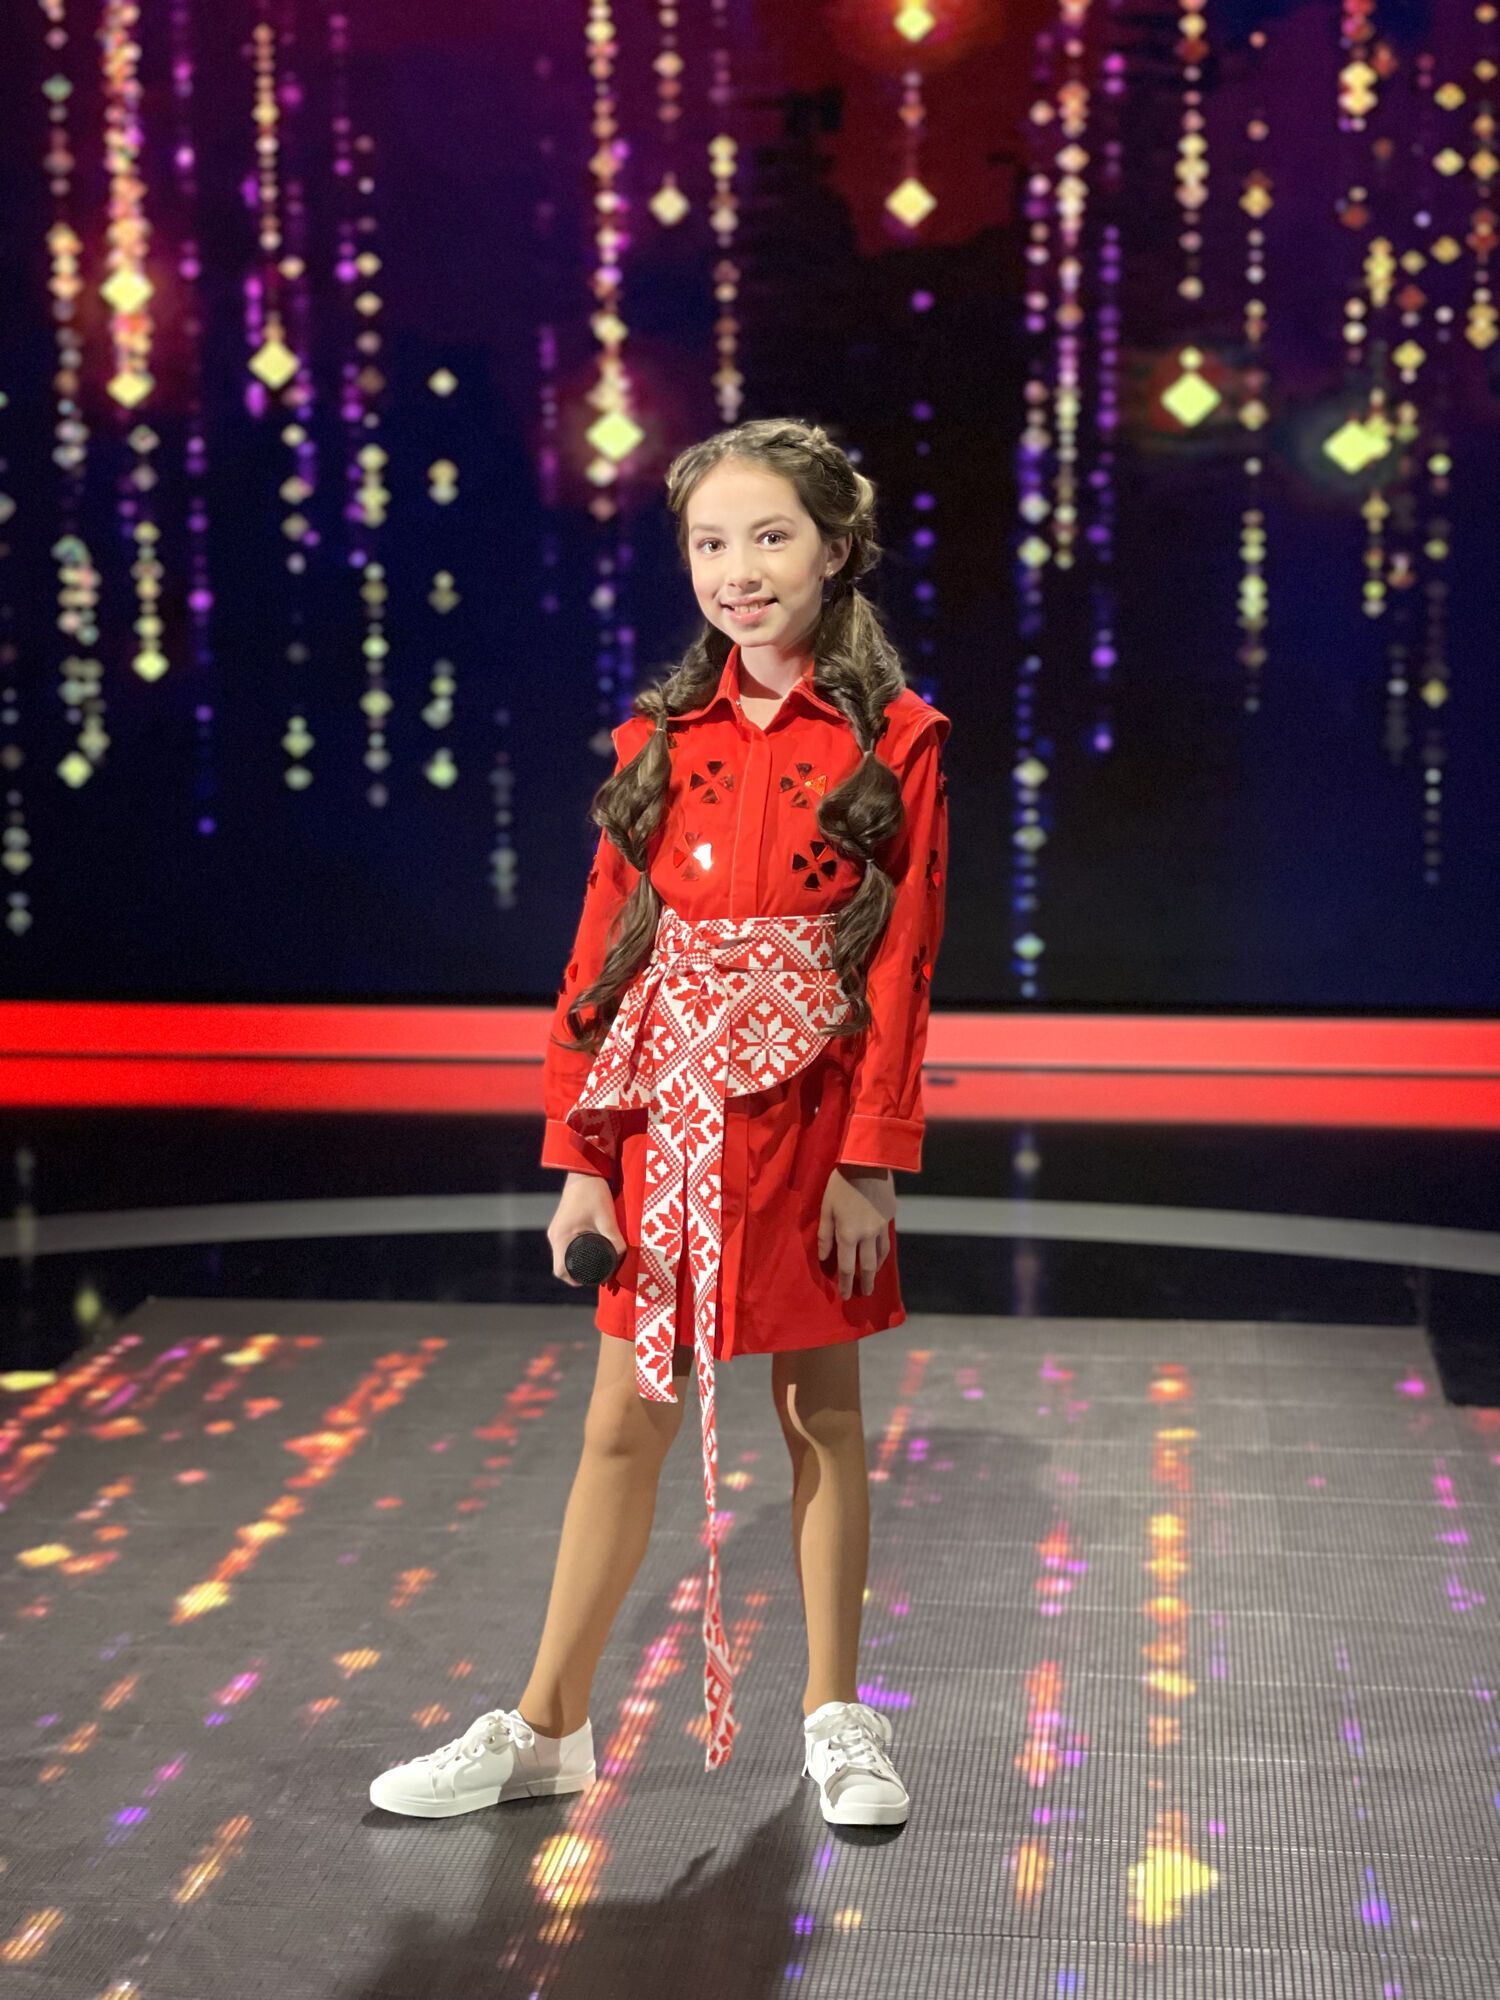 Многогранность юной девочки впечатляет: Vlada K о работе на телевидении и карьере певицы